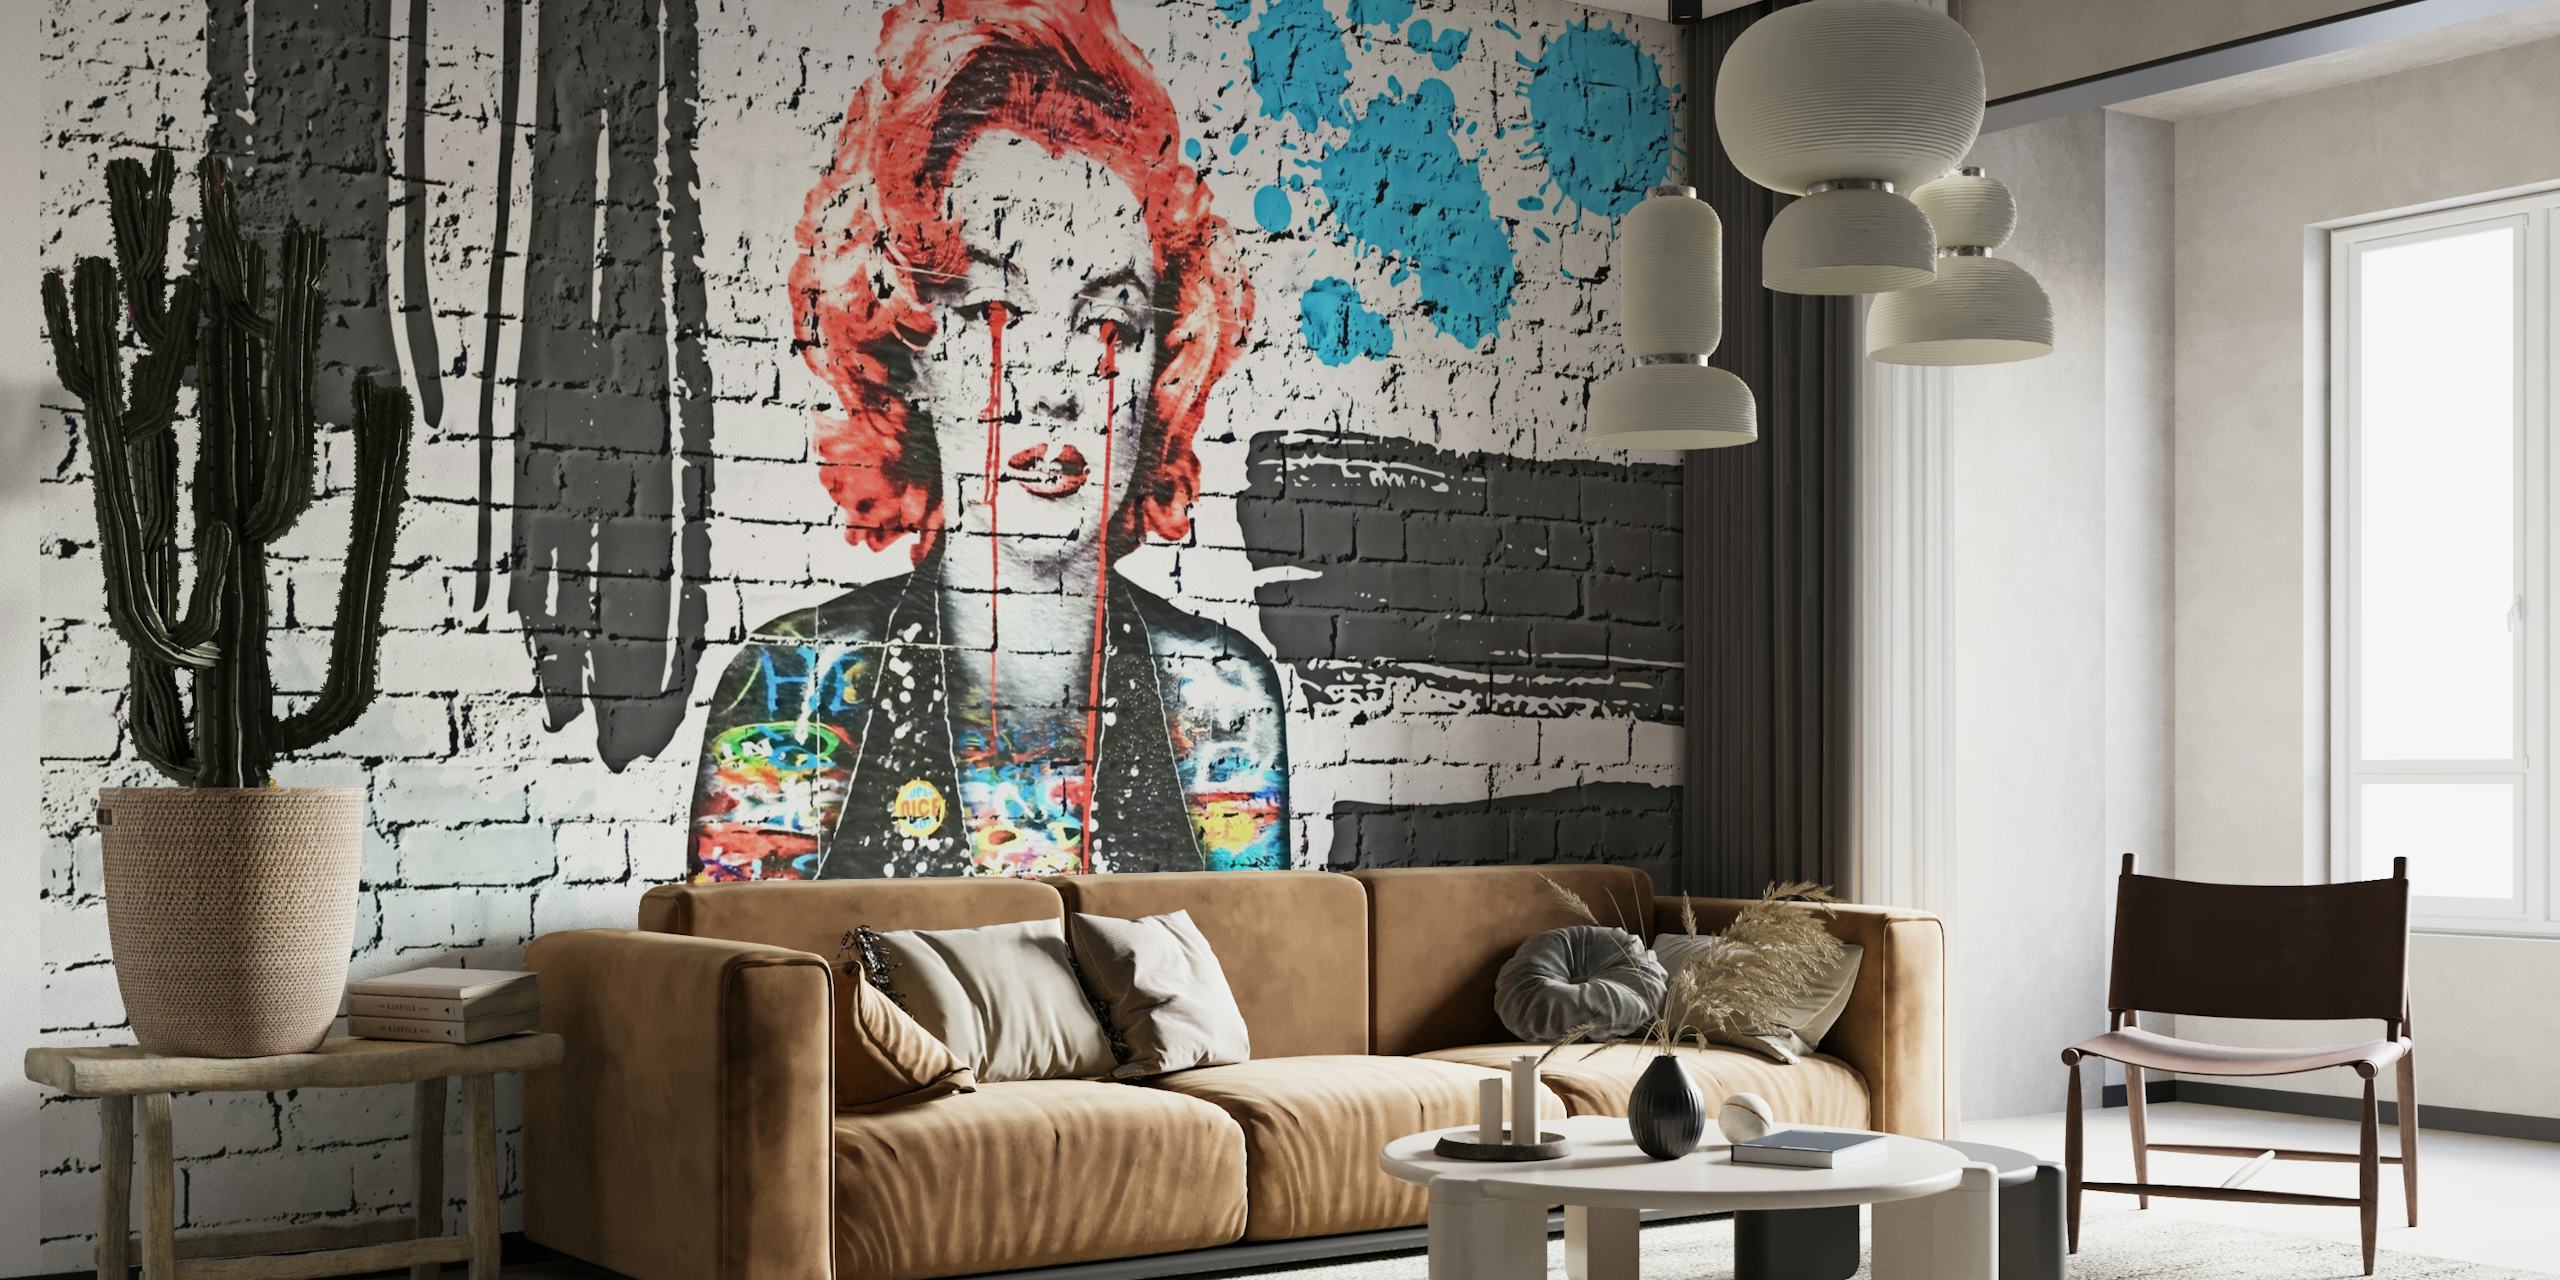 Mural de parede em estilo graffiti com elementos vibrantes de pop art em um fundo de tijolos para interiores modernos.